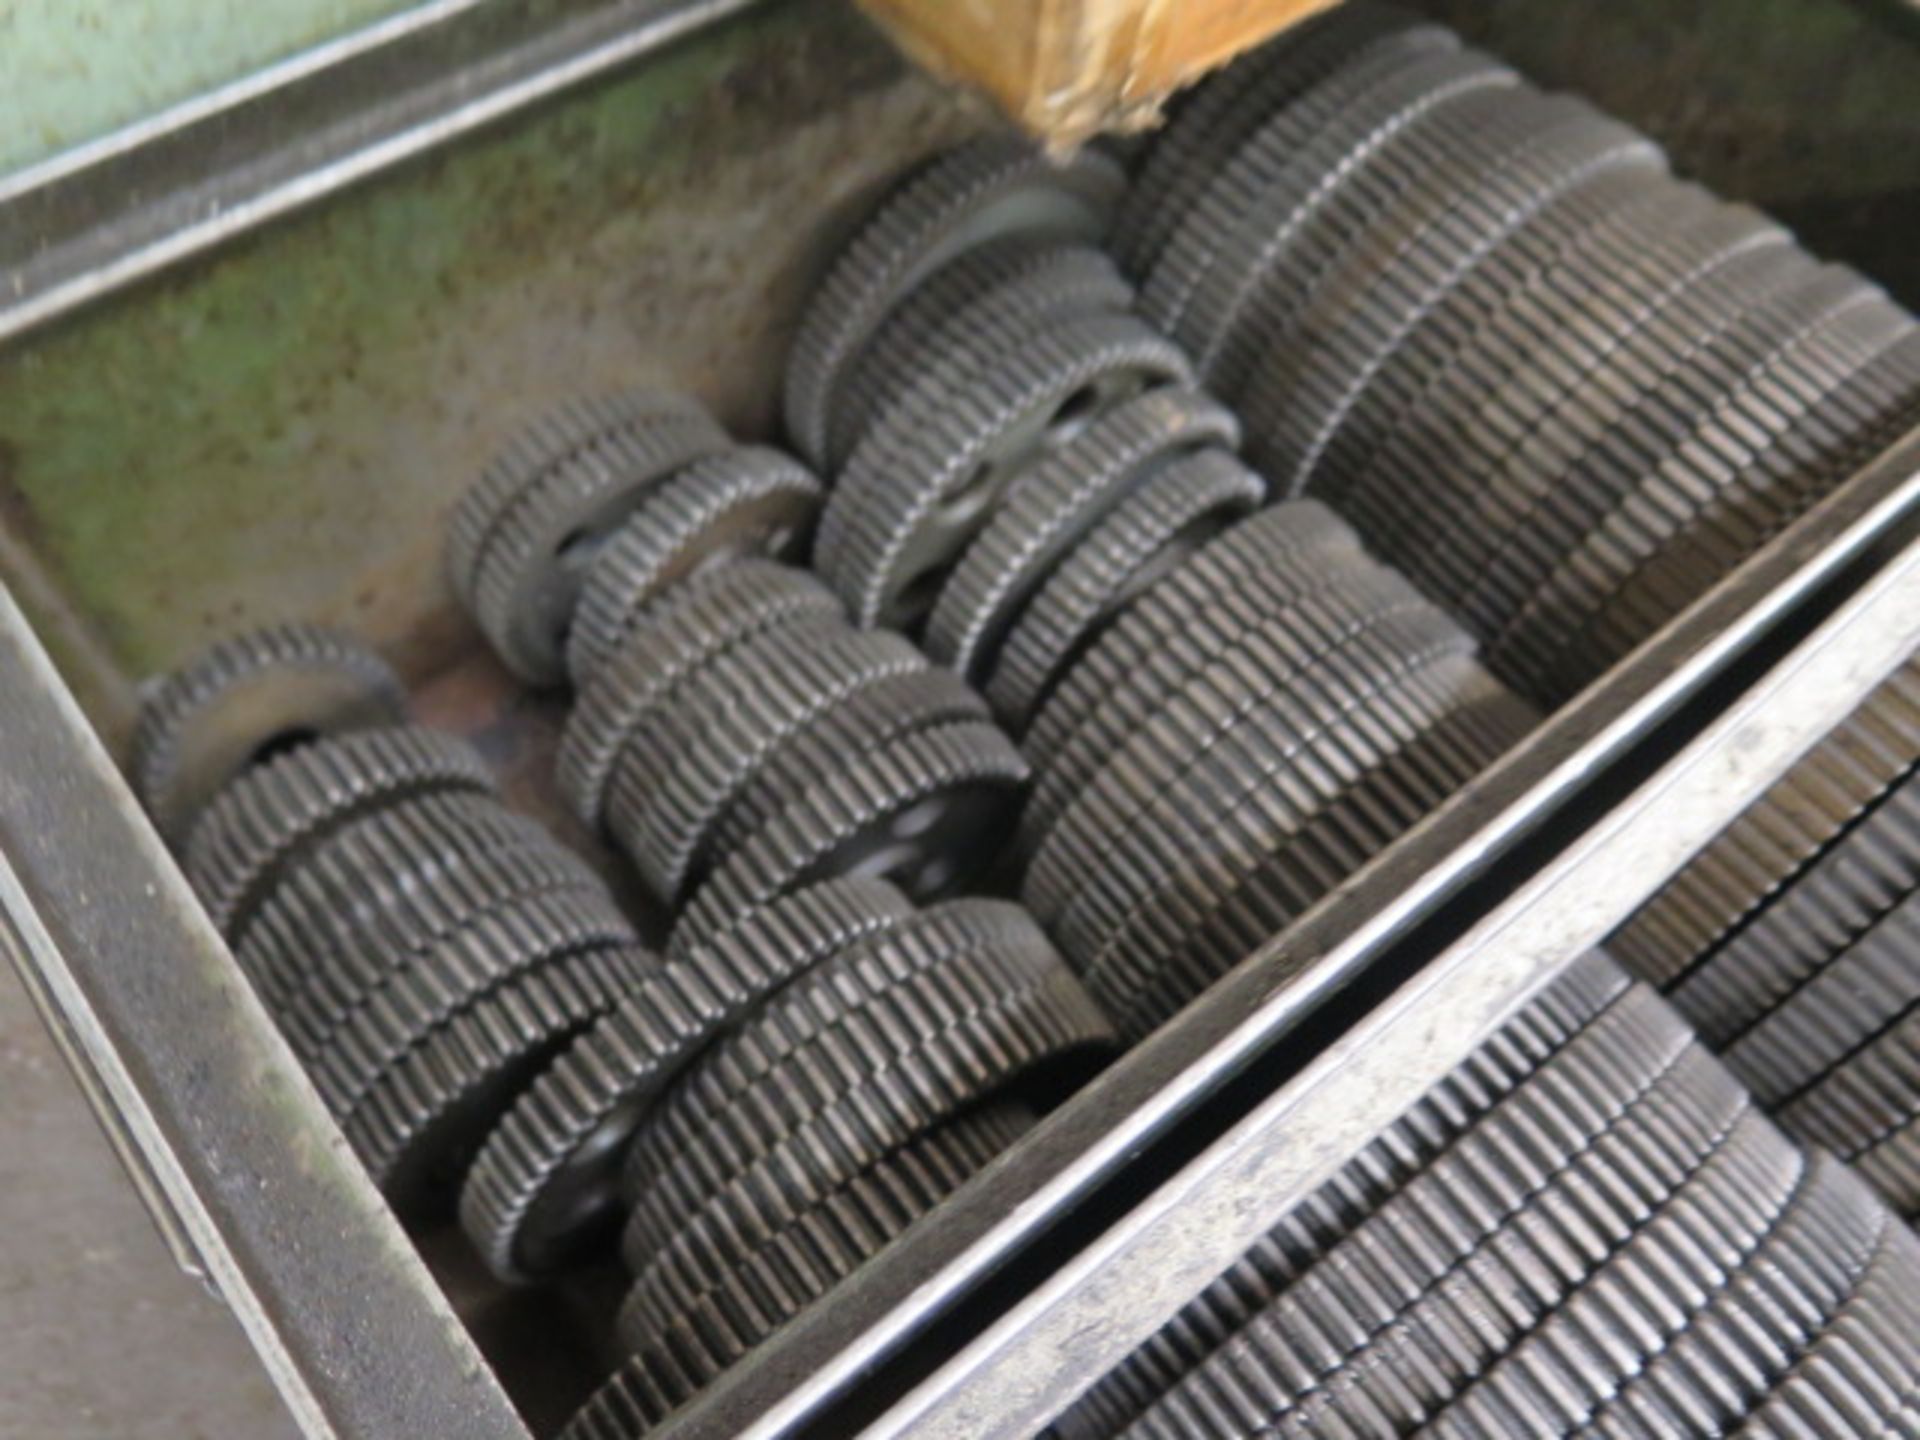 Storage Cabinet w/ Boston Gear Gear Set (SOLD AS-IS - NO WARRANTY) - Image 7 of 7